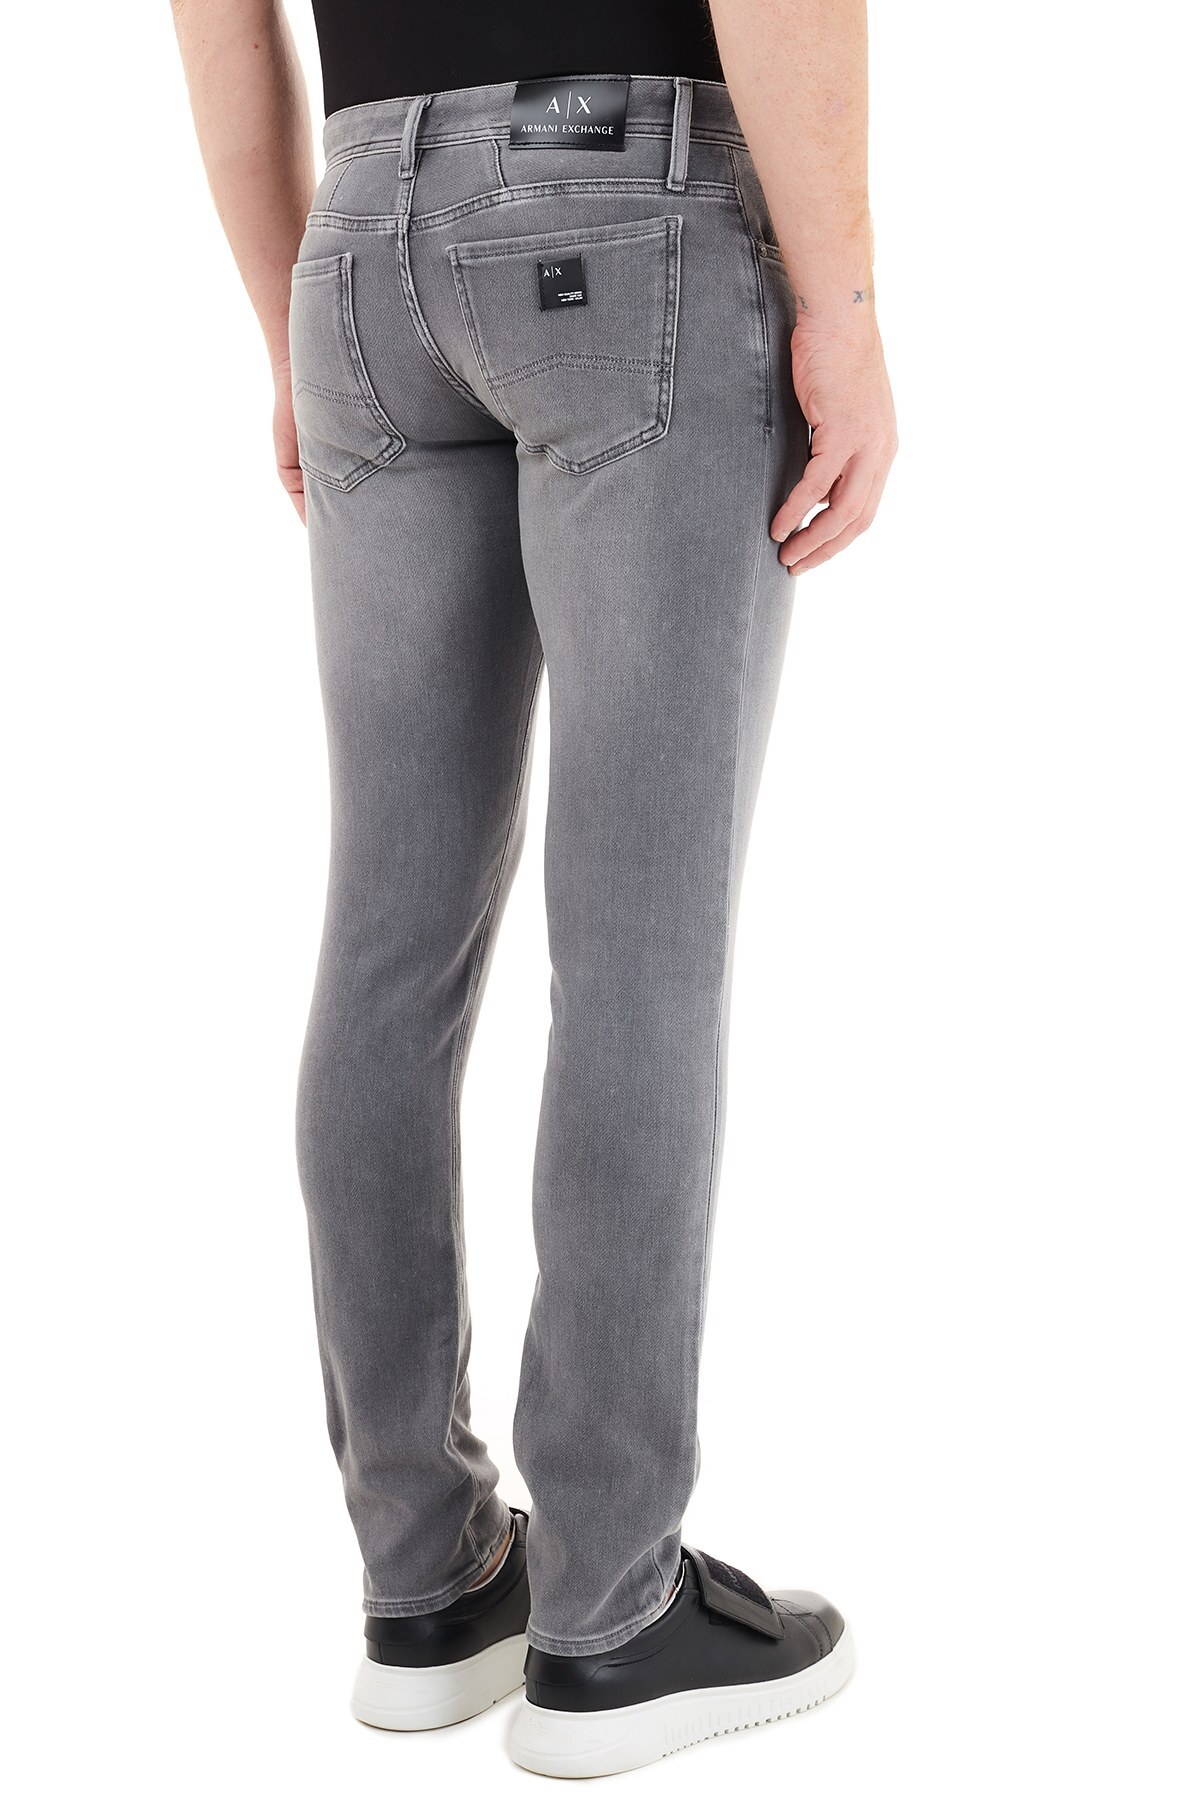 Armani Exchange Pamuklu Skinny Fit J14 Jeans Erkek Kot Pantolon 6HZJ14 Z5QMZ 0903 GRİ